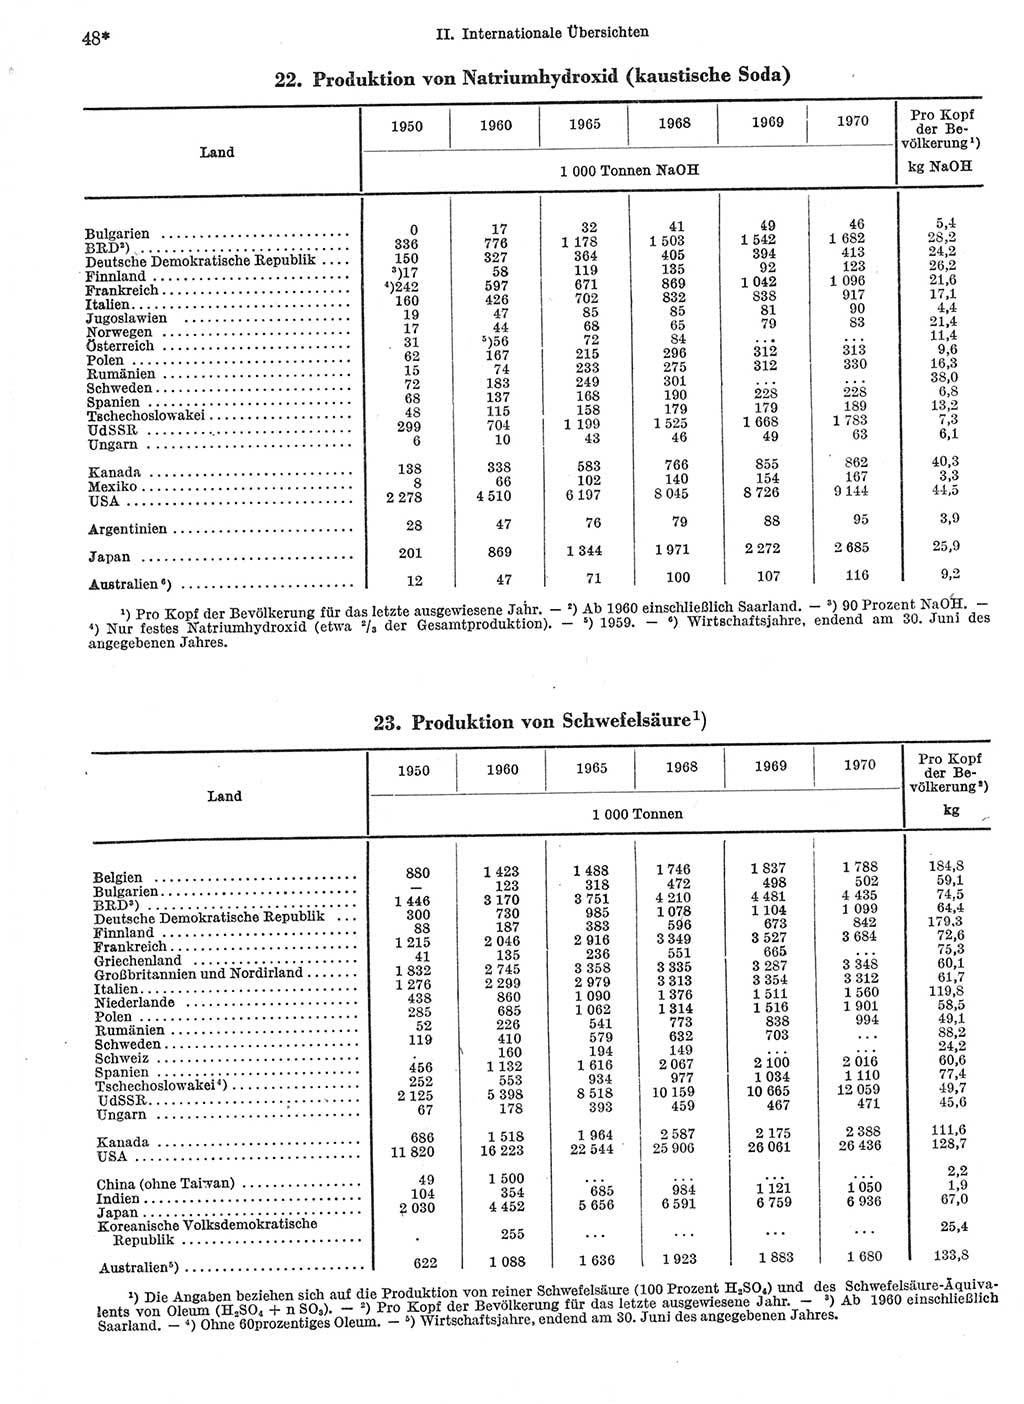 Statistisches Jahrbuch der Deutschen Demokratischen Republik (DDR) 1972, Seite 48 (Stat. Jb. DDR 1972, S. 48)